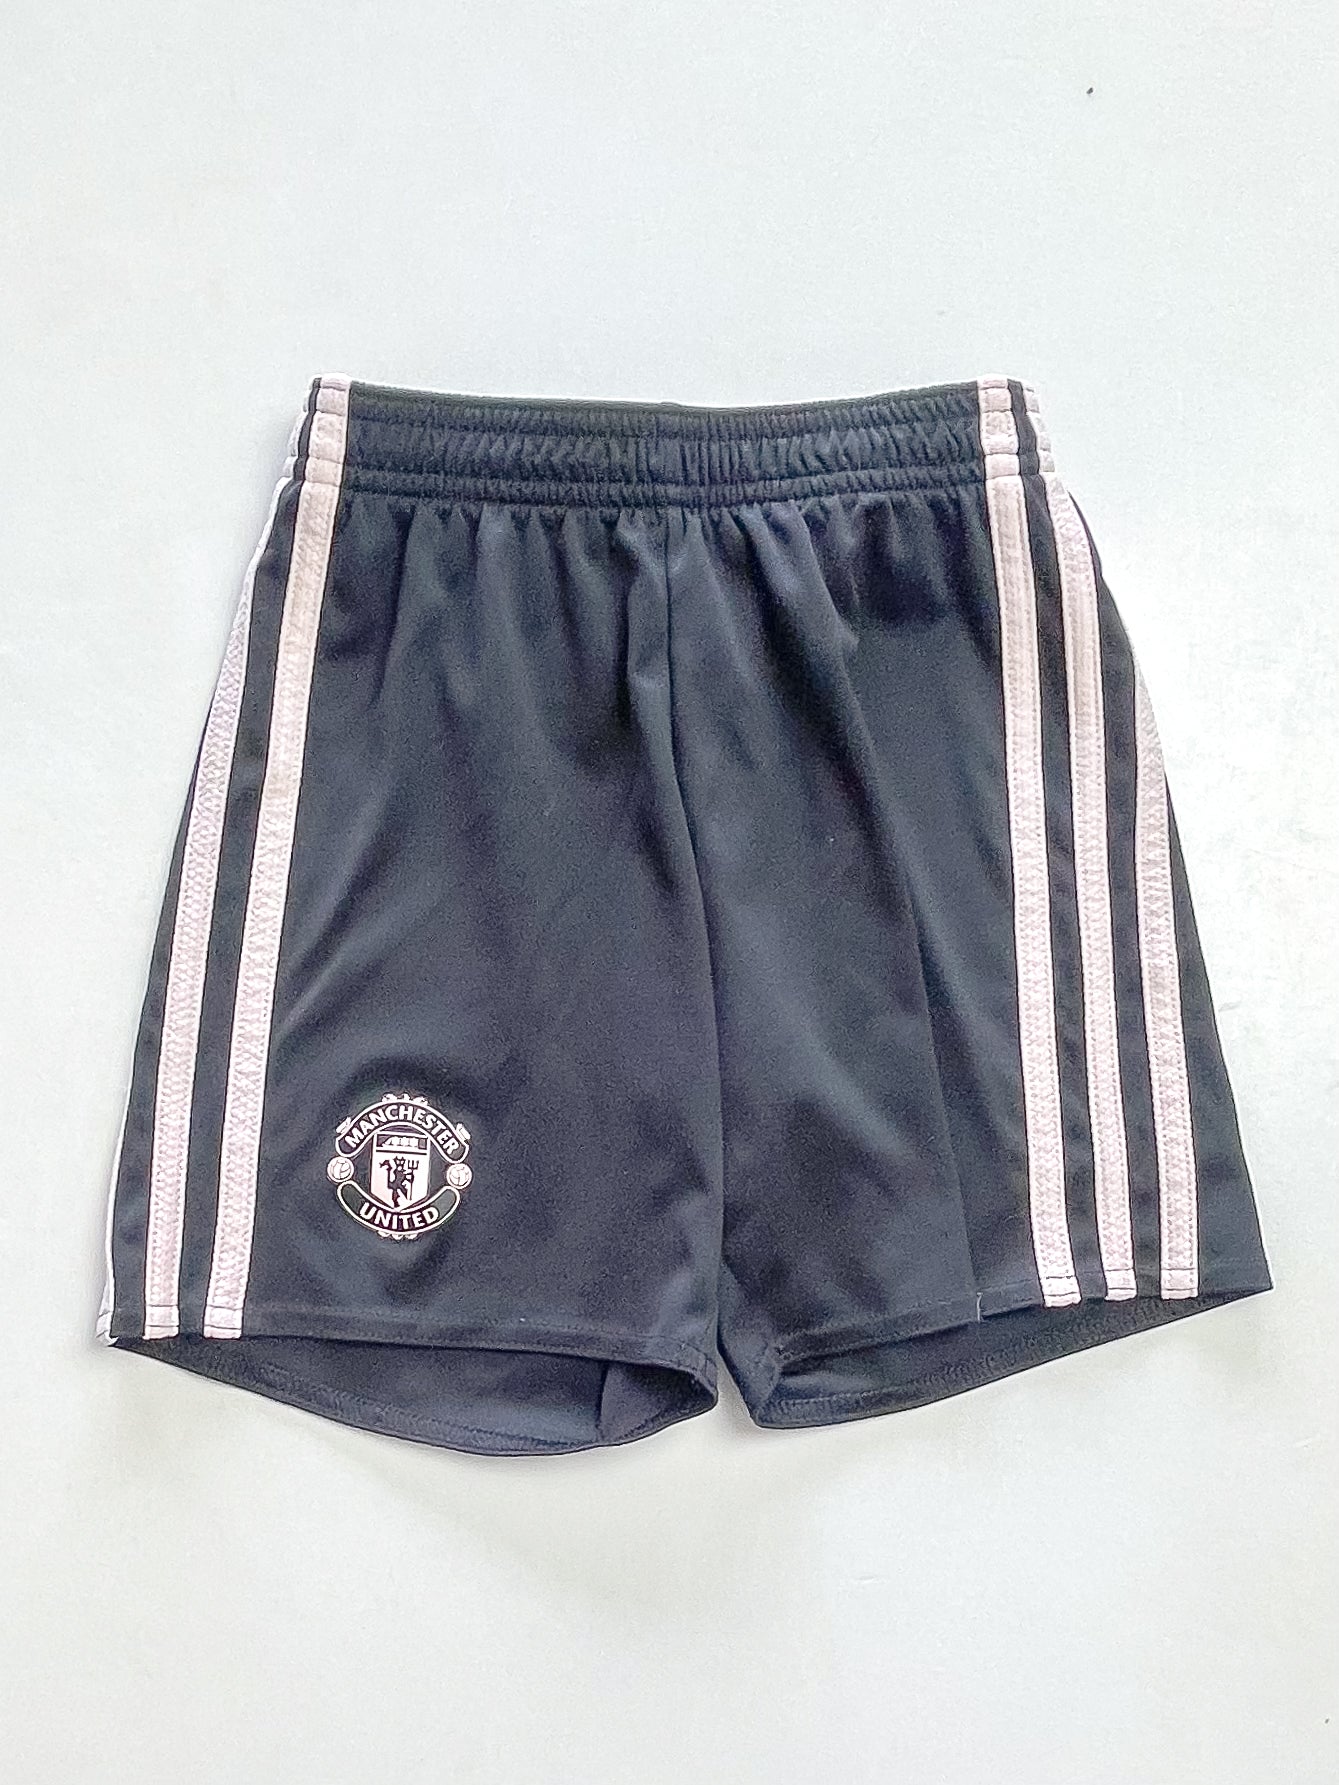 Adidas Manchester United shorts (5-6y)